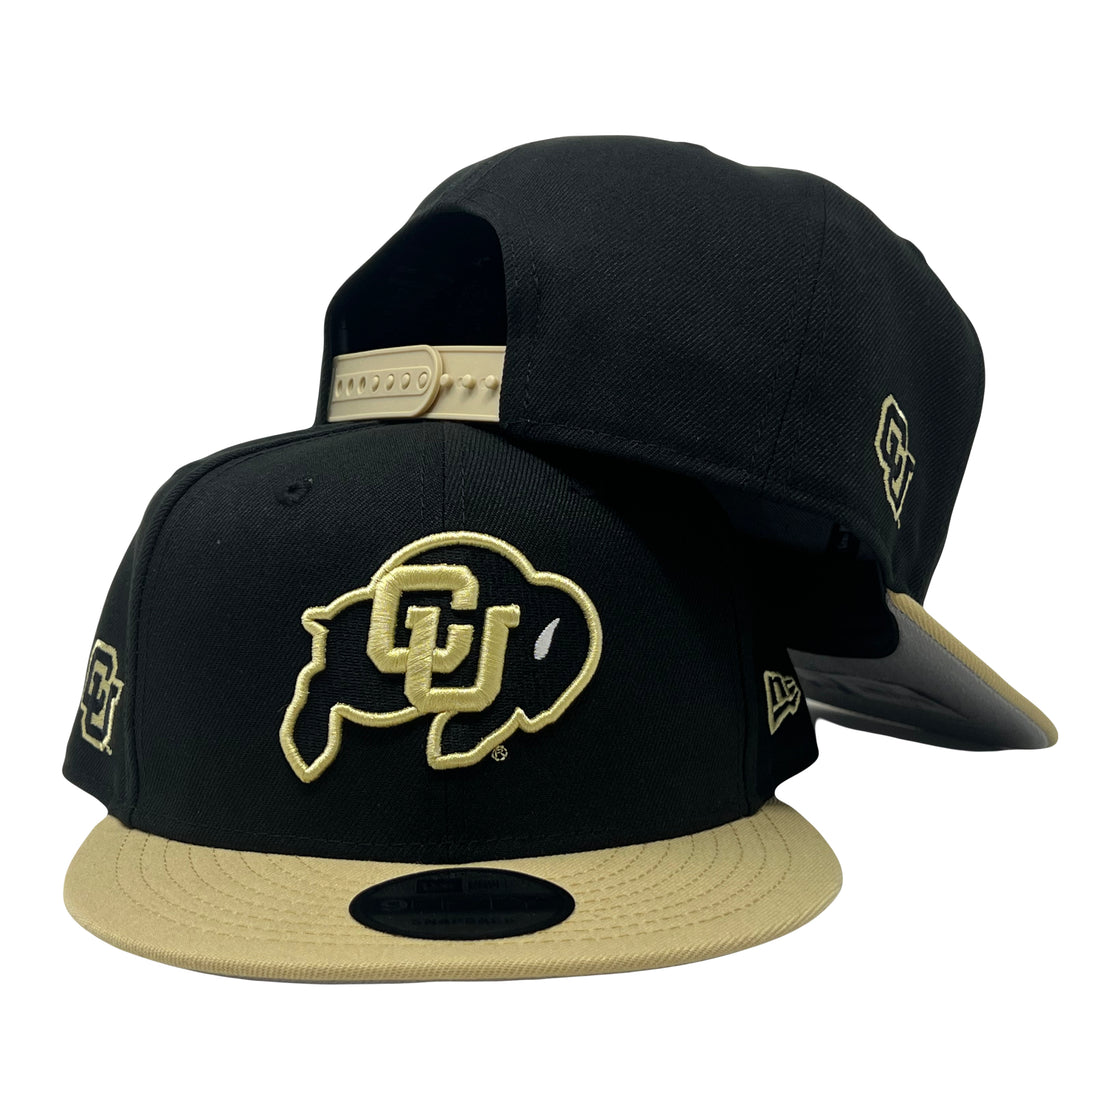 Colorado Buffaloes University of Colorado Boulder college NCAA Snapback Hat